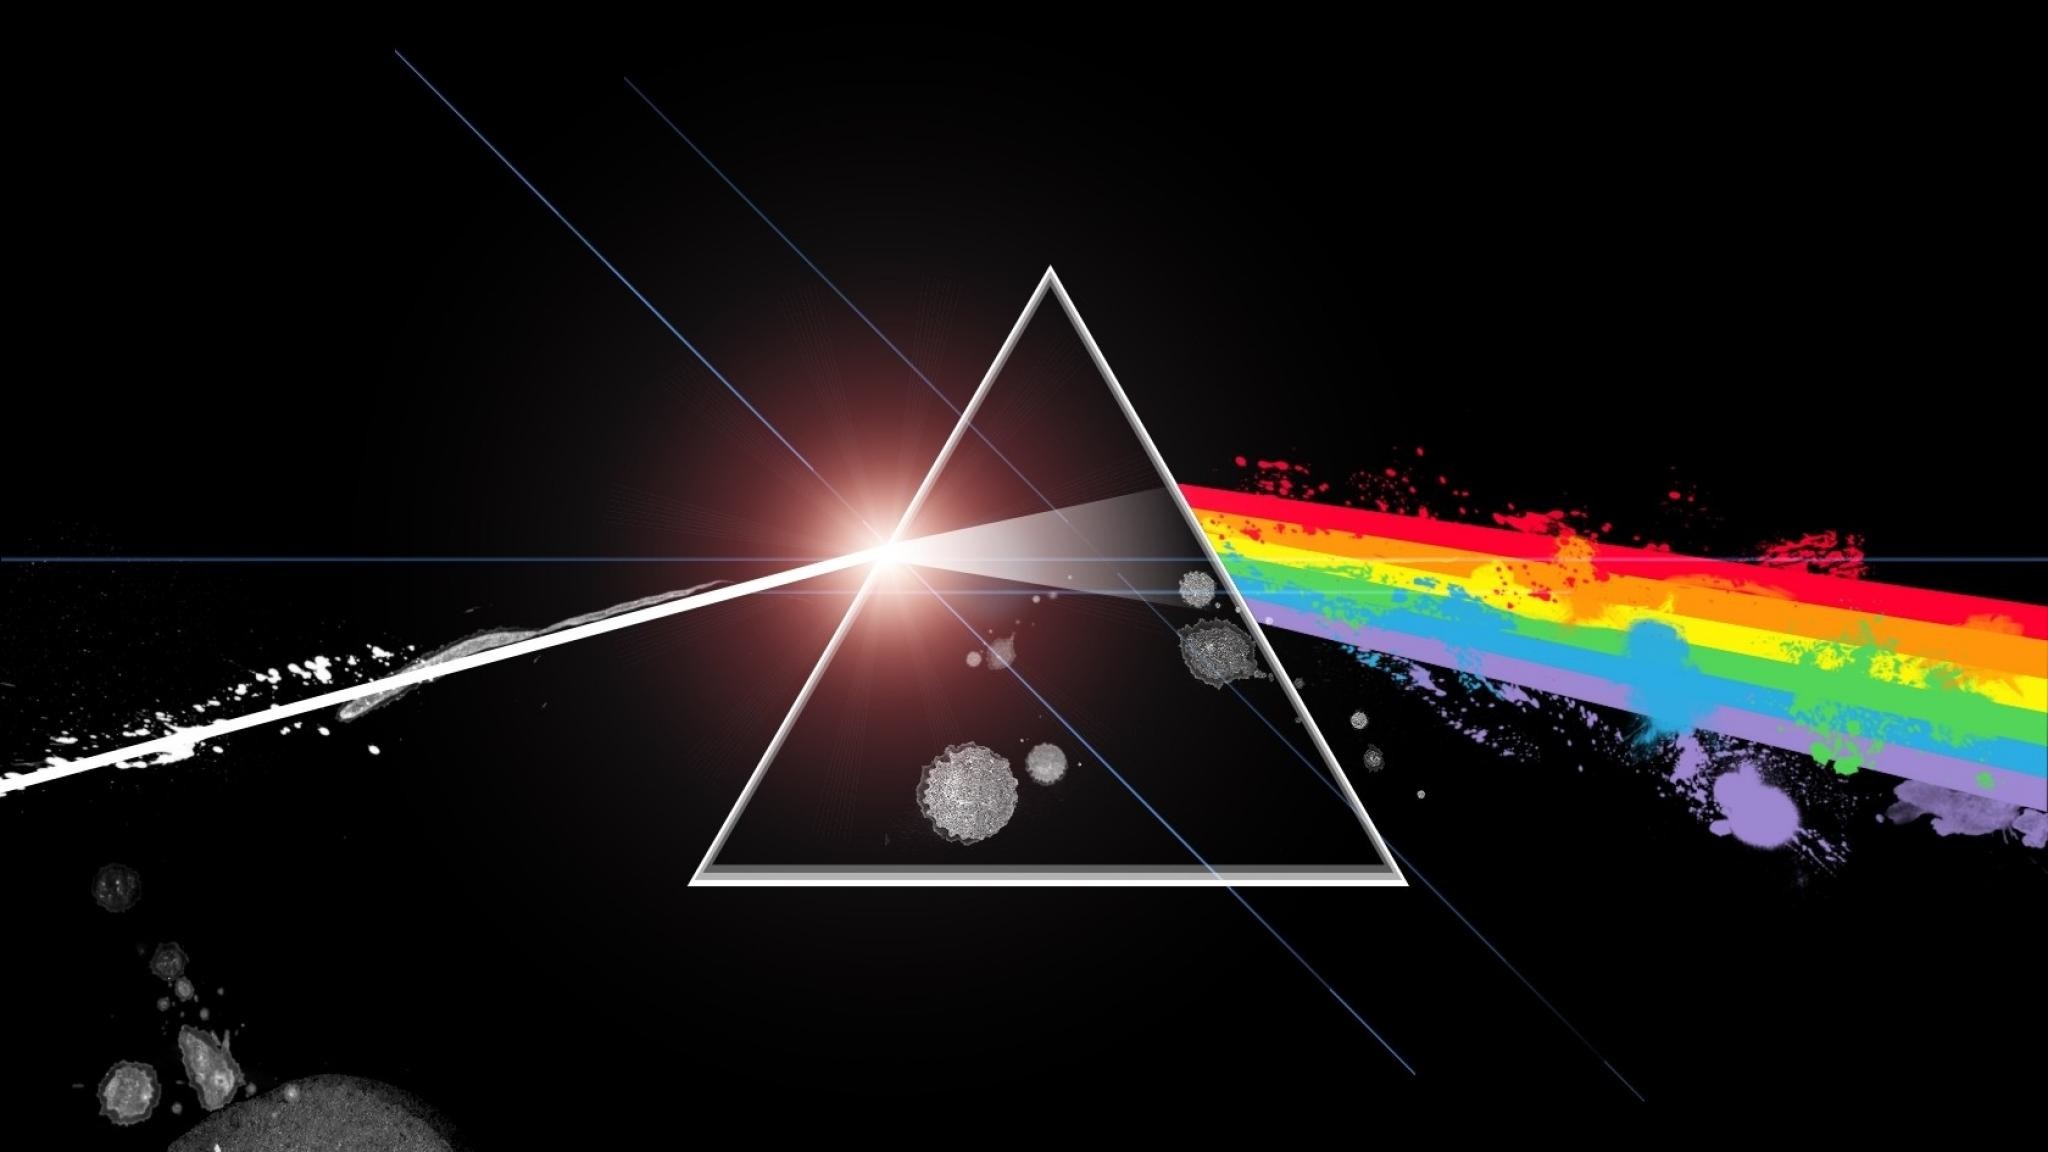 2048x1152 Pink Floyd 3D Wallpaper - WallpaperSafari